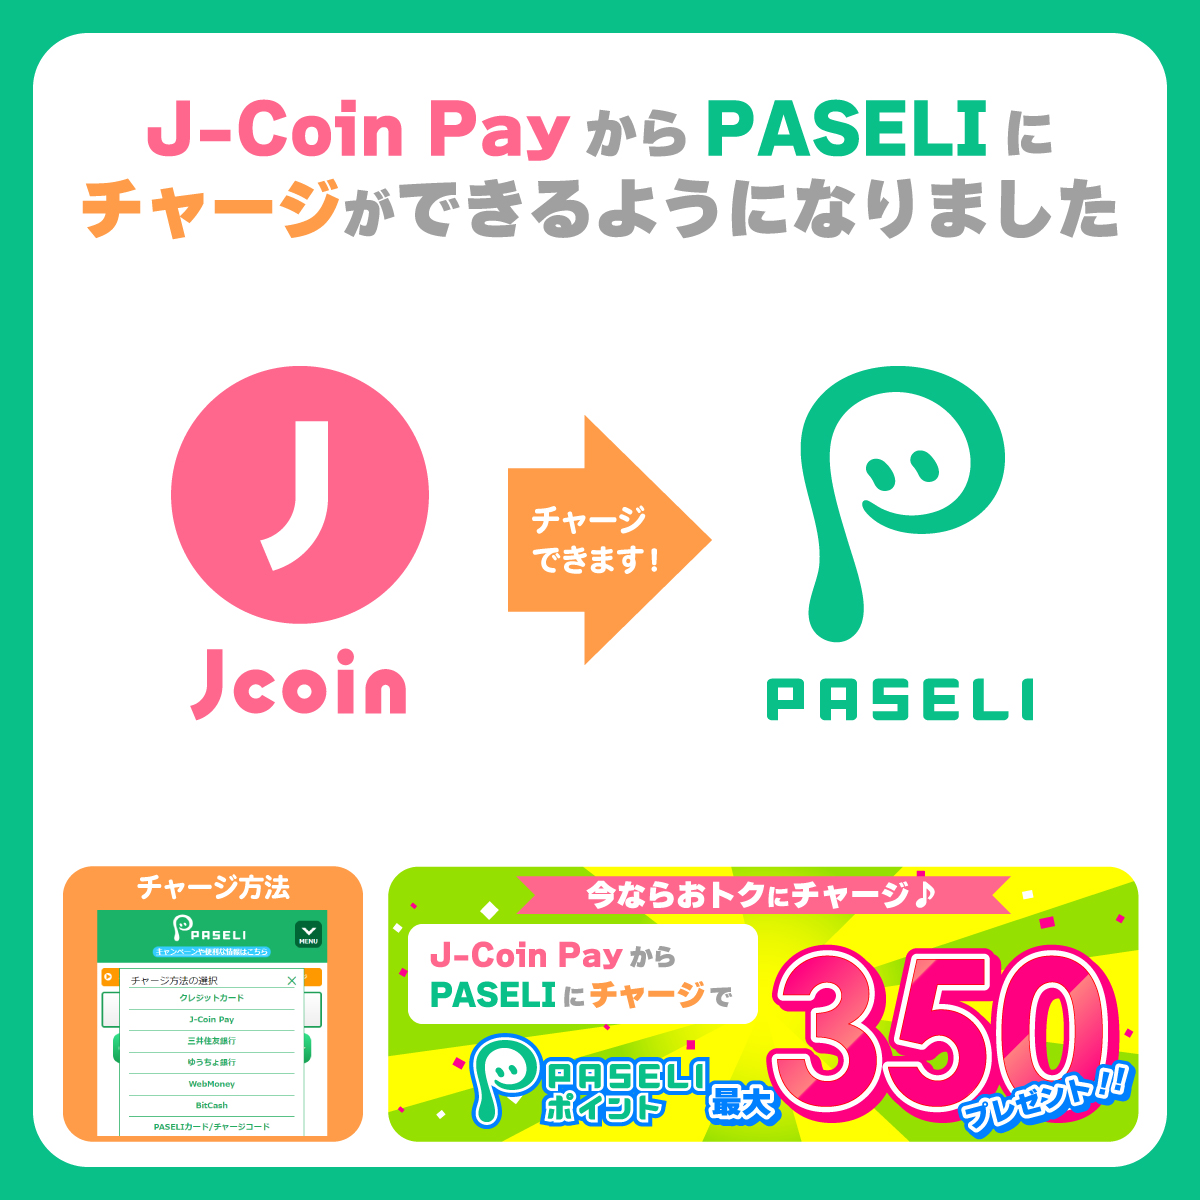 🎉PASELIのチャージ方法が増えました🎉​​ 本日より、 銀行の送金・決済アプリ「J-Coin Pay」からPASELIへチャージできるようになりました！​ J-Coin PayからのPASELIチャージで最大350PASELIポイントが貰える記念キャンペーンも開催中！​ 今すぐチェック↓↓↓​​ p.eagate.573.jp/game/paseli/ca…